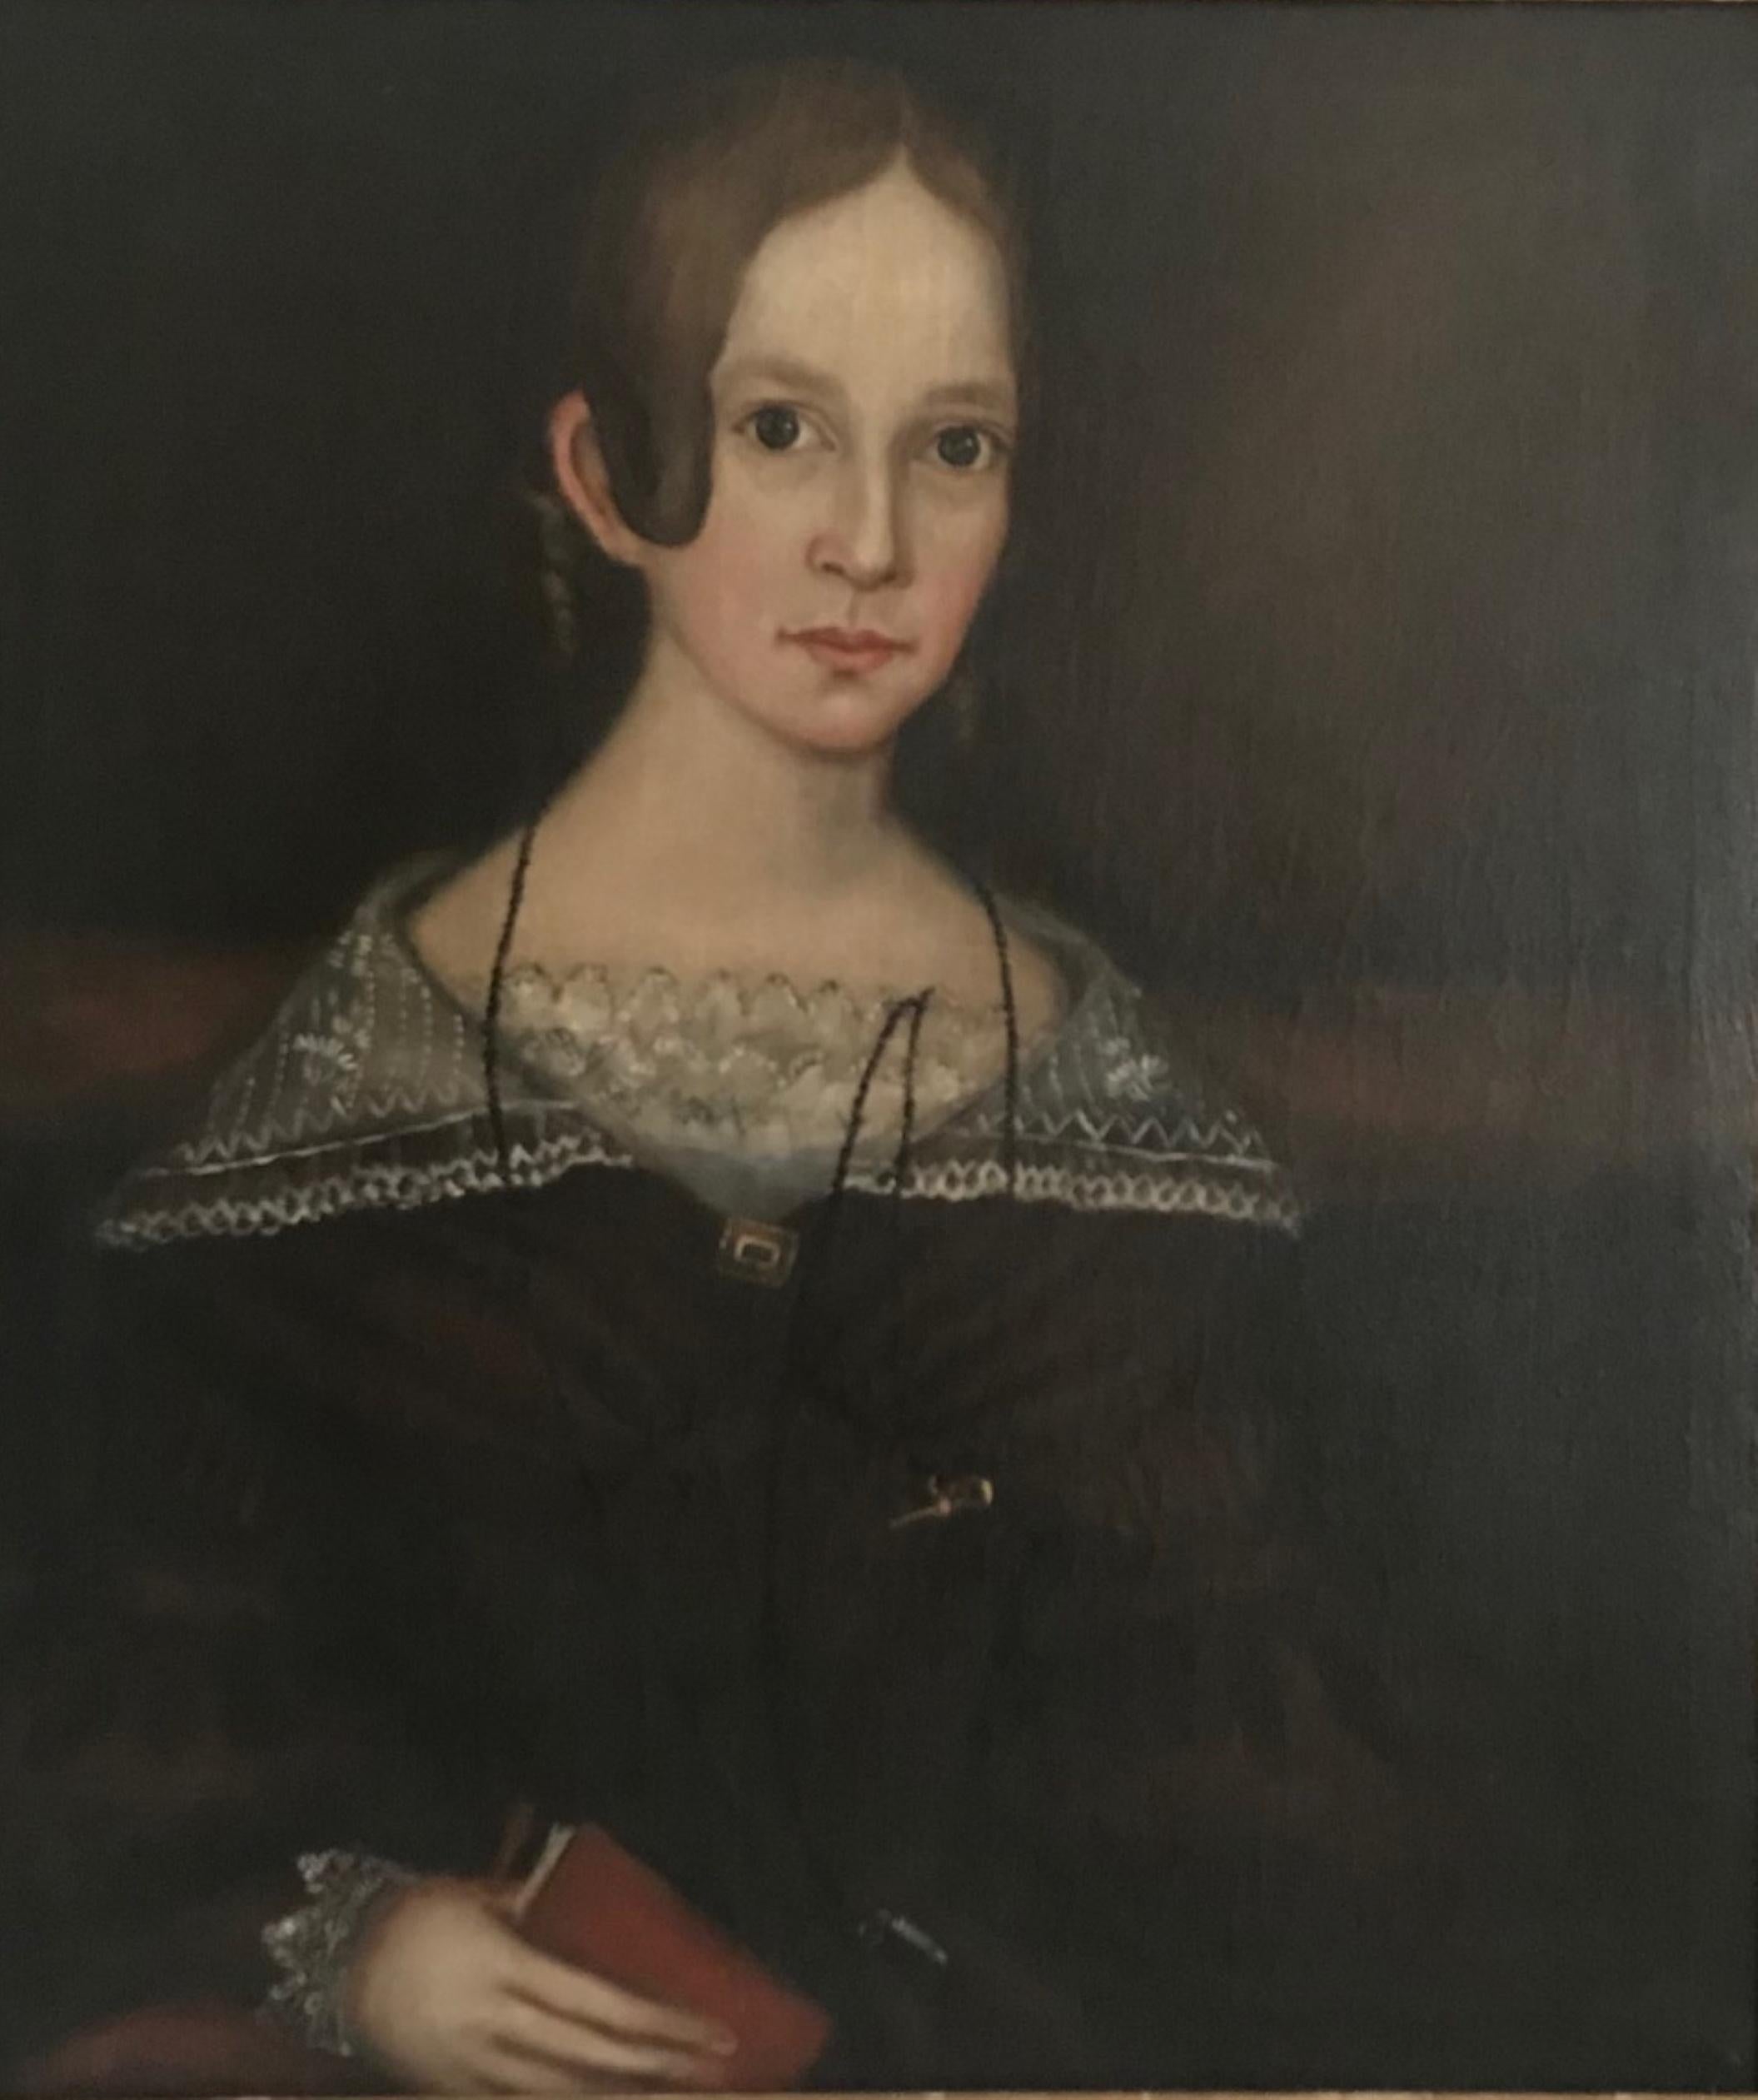 Hervorragende Ammi Phillips American Folk Art Porträtmalerei, um 1840

Wir sind stolz auf den Erwerb dieses authentischen Meisterwerks von Ammi Phillips (1788-1865).
Das fein gezeichnete Porträt zeigt ein attraktives junges Mädchen in reizvoller,